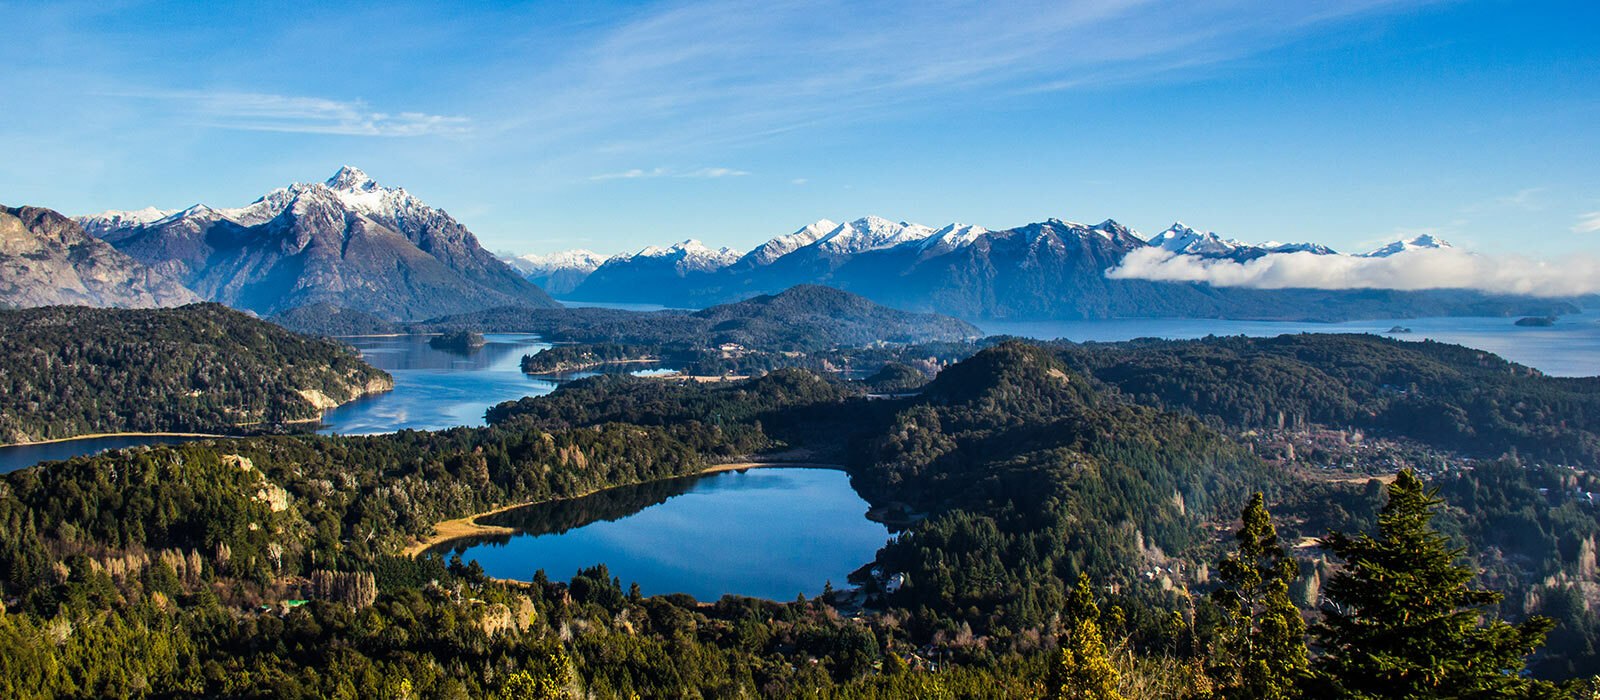 Bariloche : entre lacs et forêts